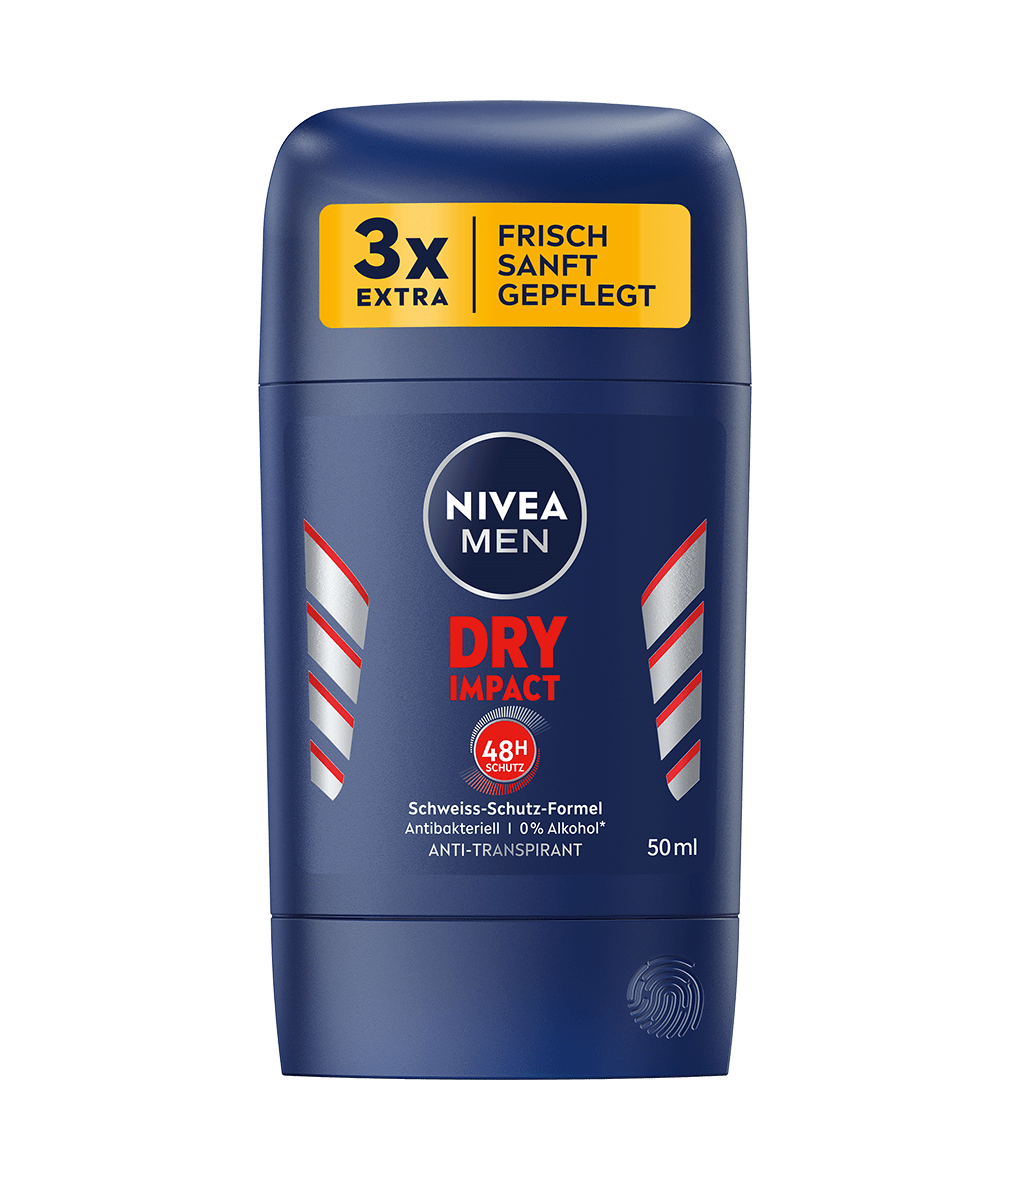 NIVEA MEN Dry Impact Anti-Transpirant Stick_50ml